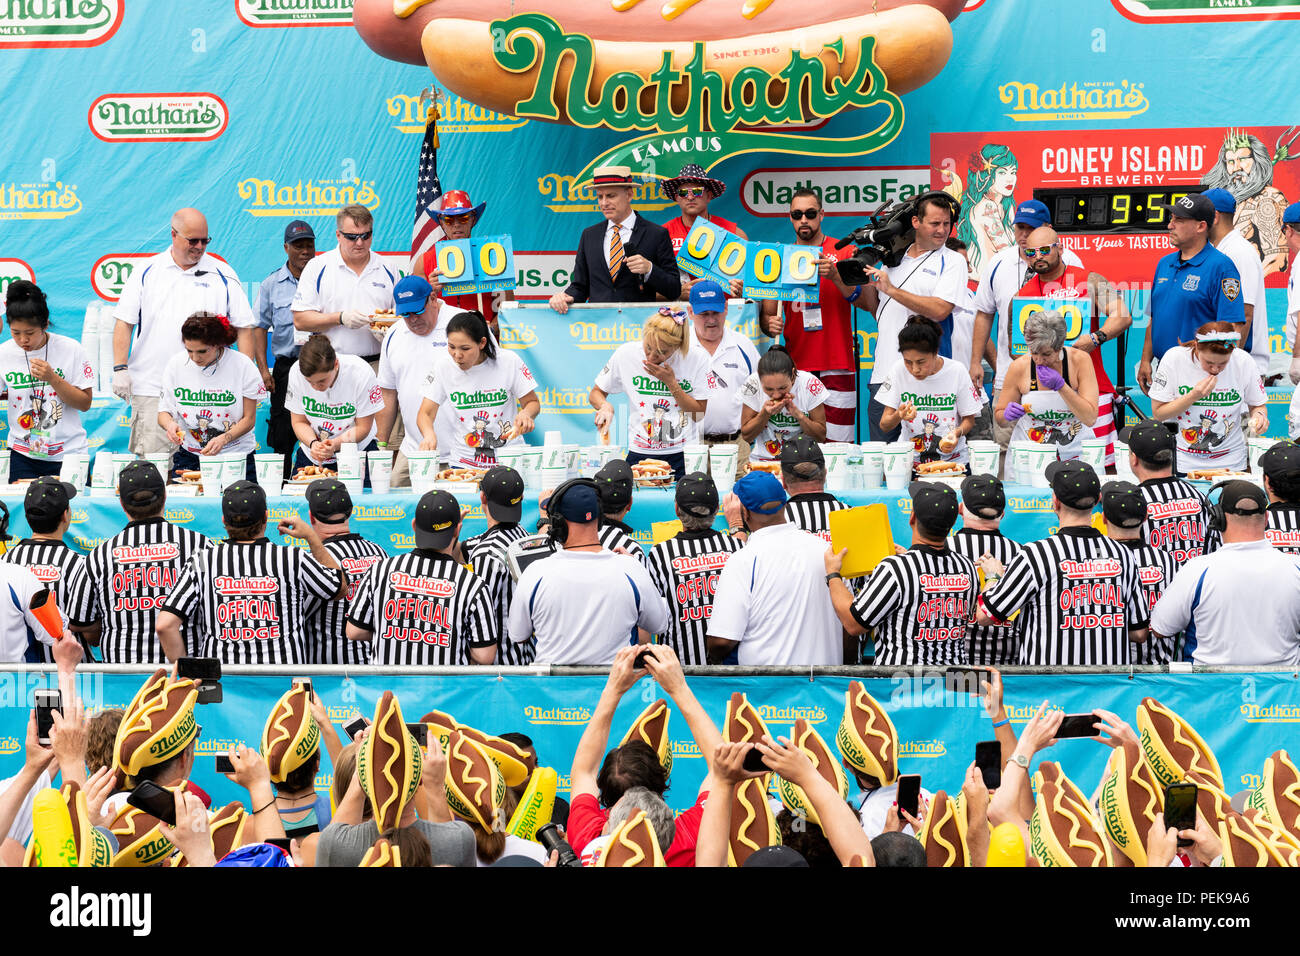 Miki Sudo (blonde Haare, in die Mitte) gegessen und Brötchen 37 Hot Dogs in zehn Minuten die Women's Division der 2018 Nathan's berühmten International zu gewinnen. Stockfoto